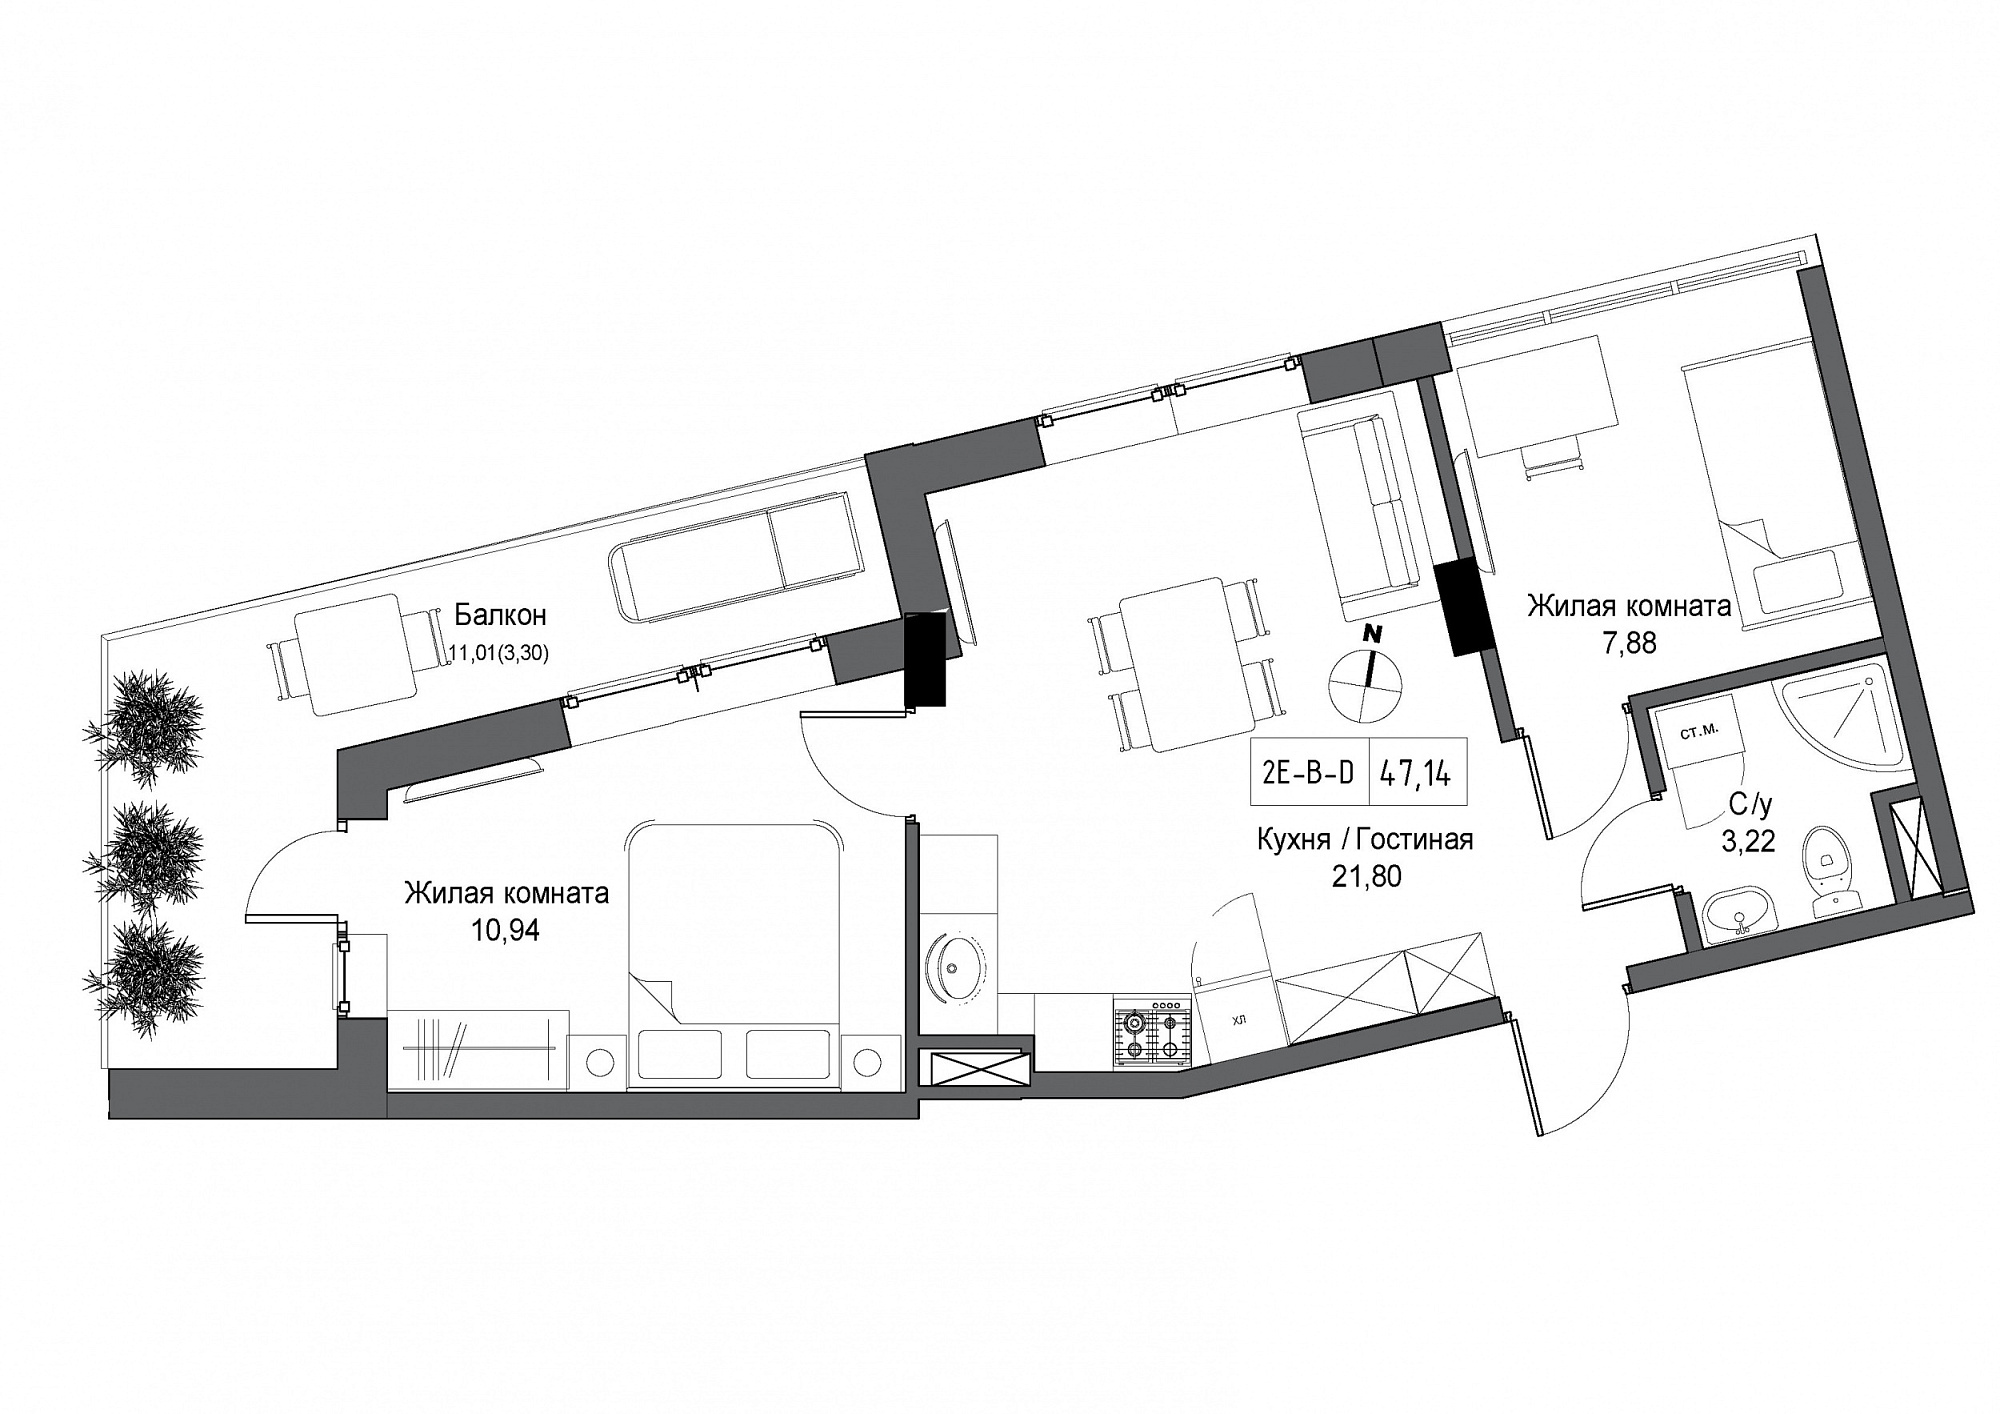 Планировка 2-к квартира площей 47.14м2, UM-004-09/0015.